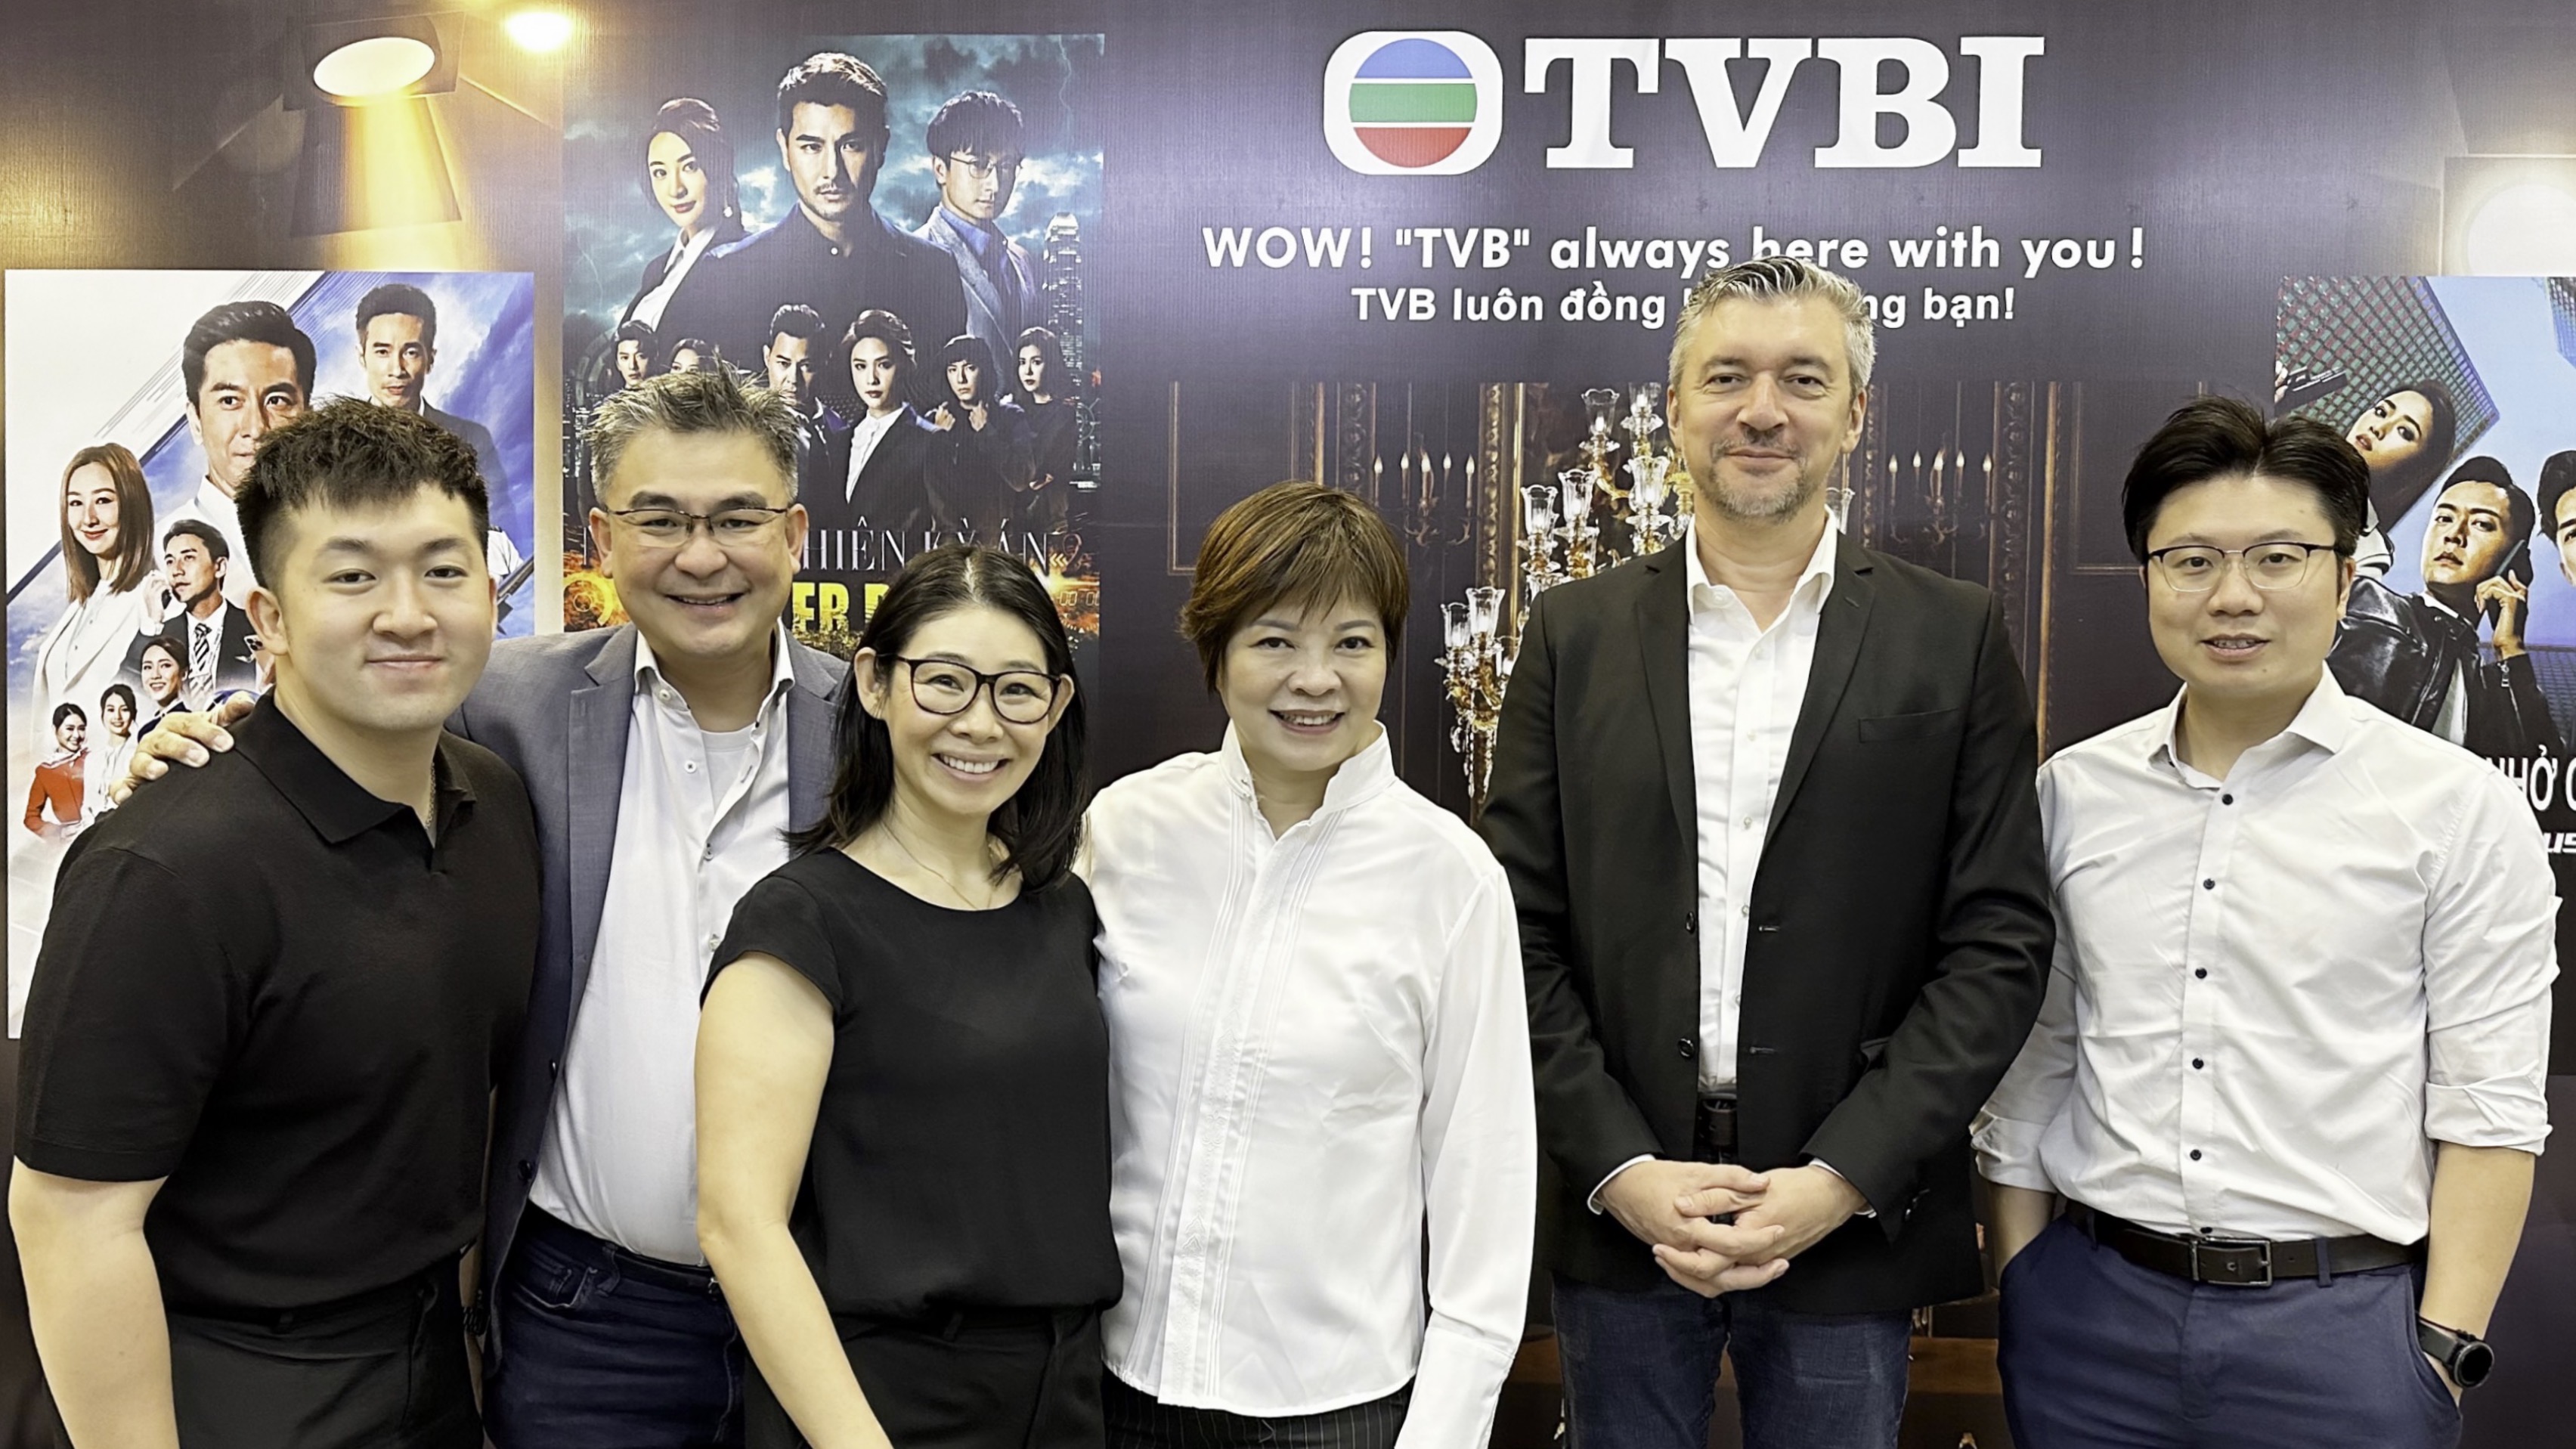 Tin vui cho tín đồ Phim HongKong, POPS Worldwide và TVB International Hợp Tác